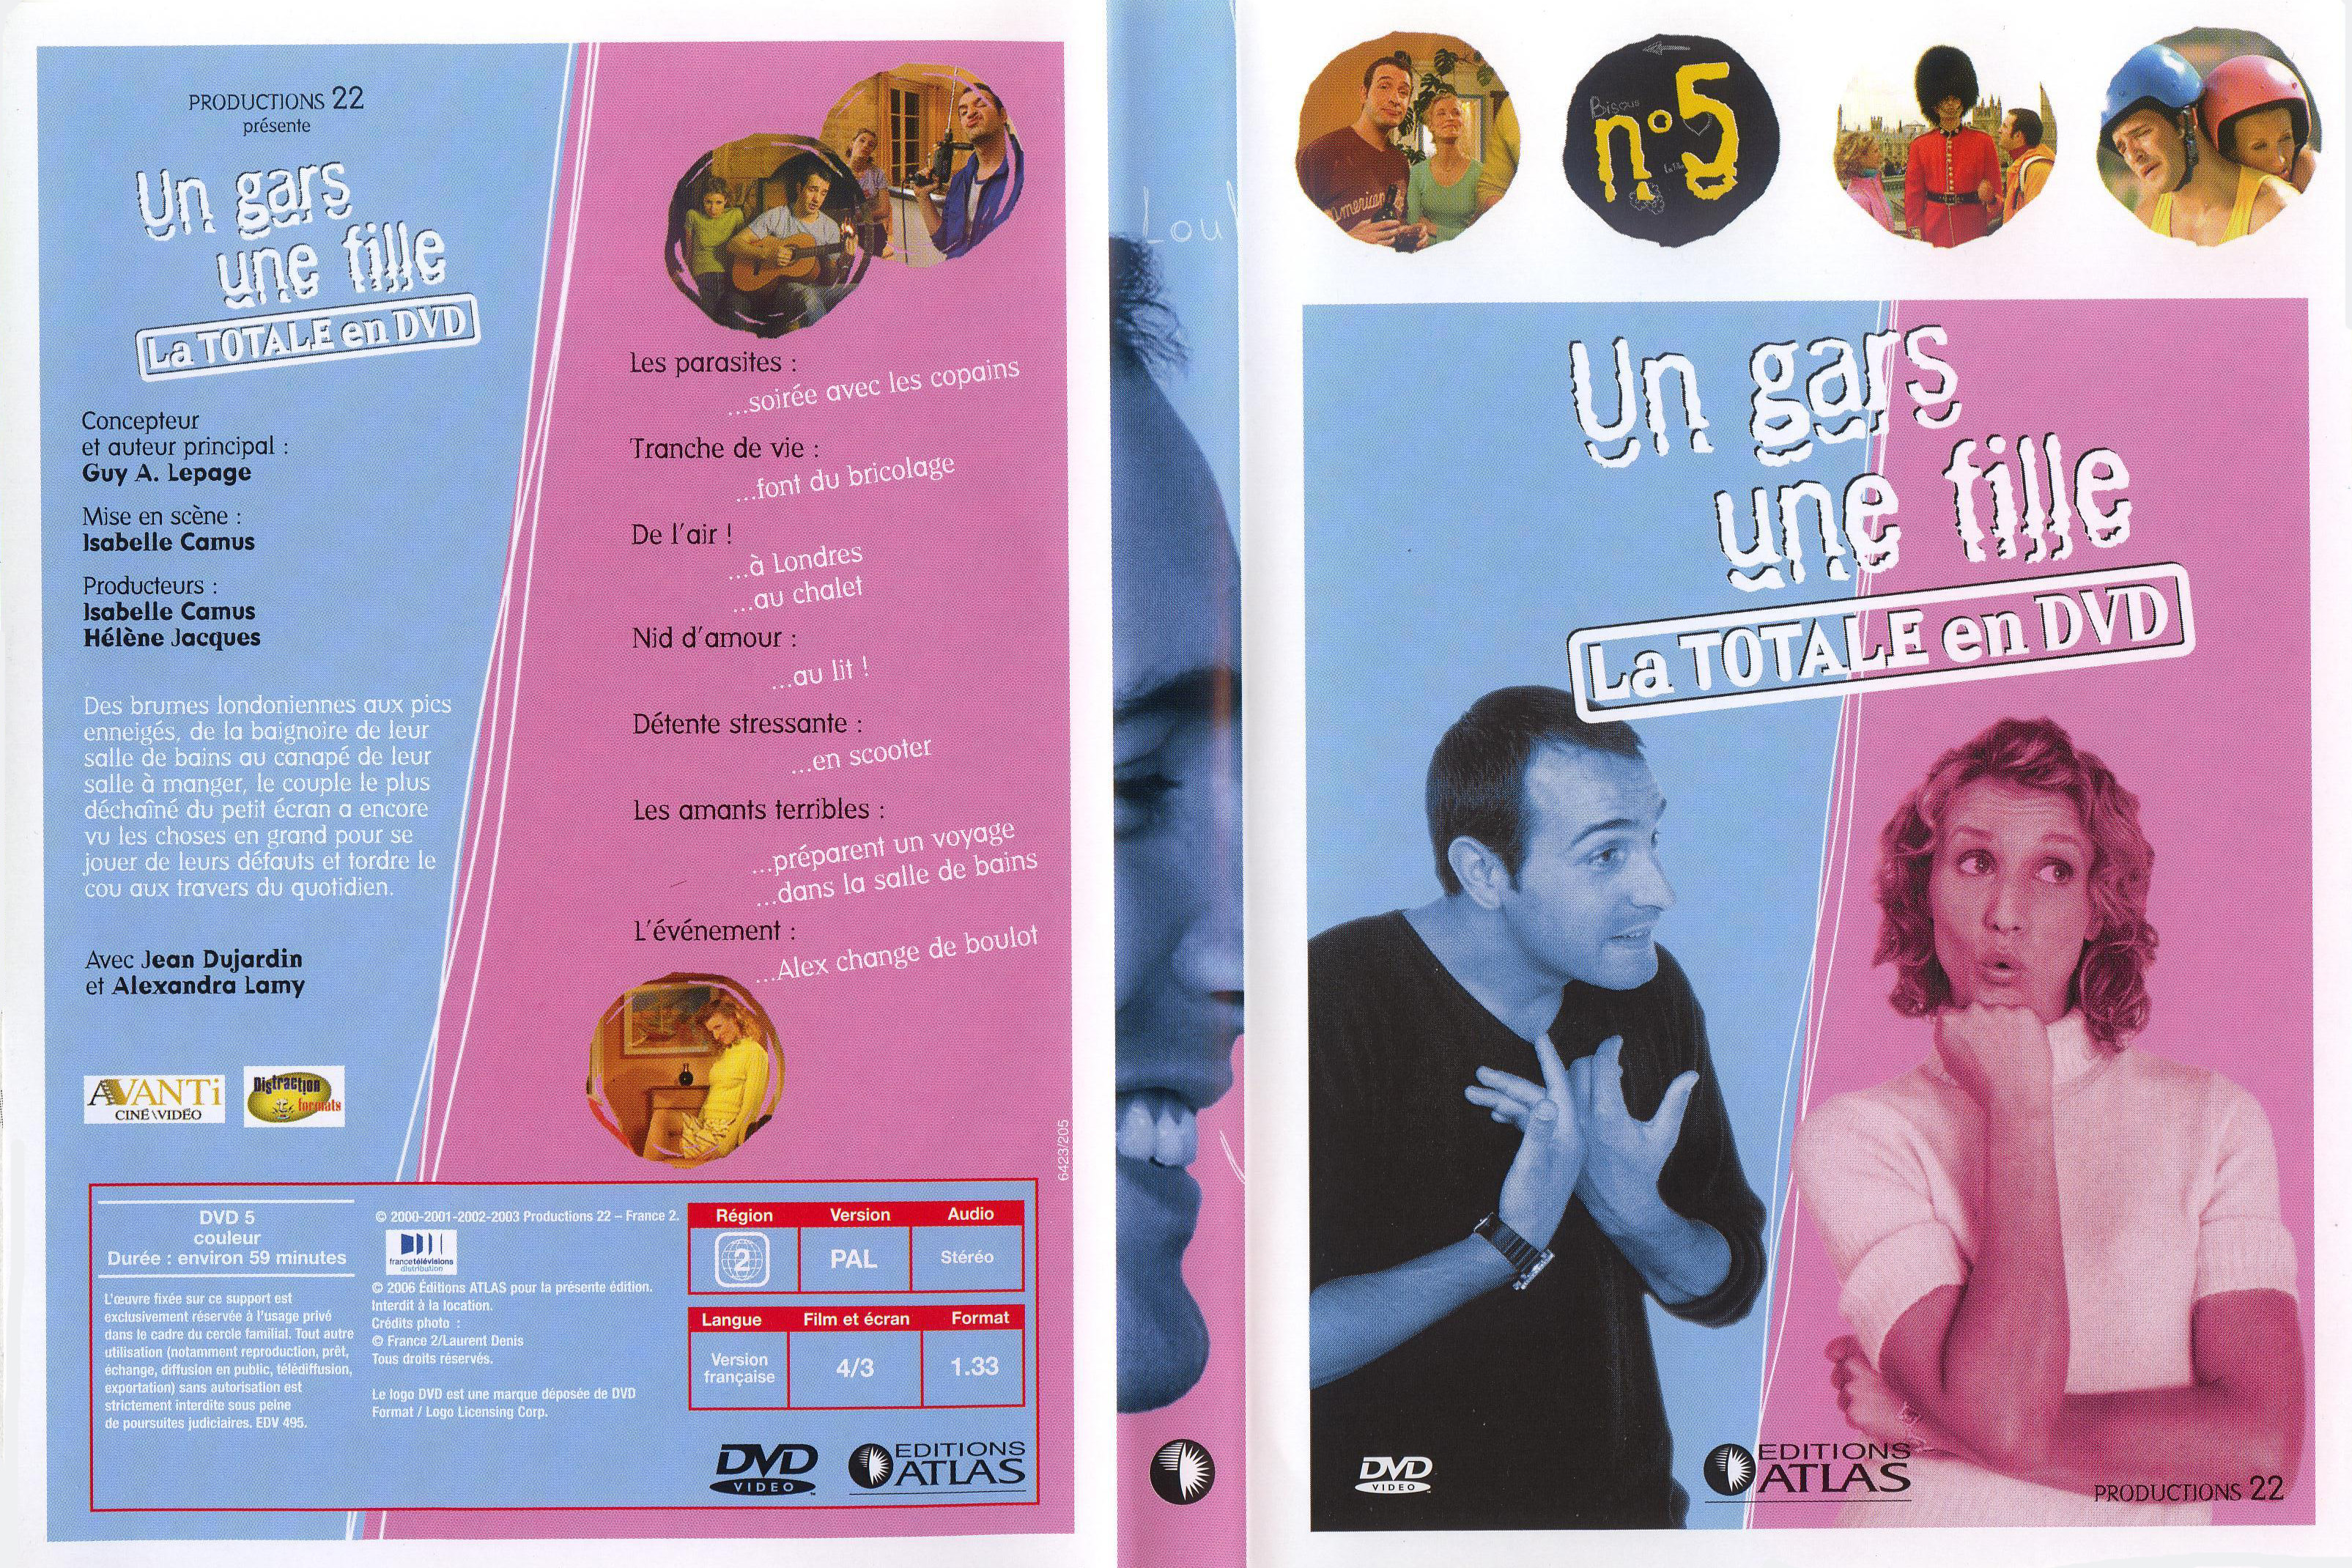 Jaquette DVD Un gars une fille la totale en dvd vol 05